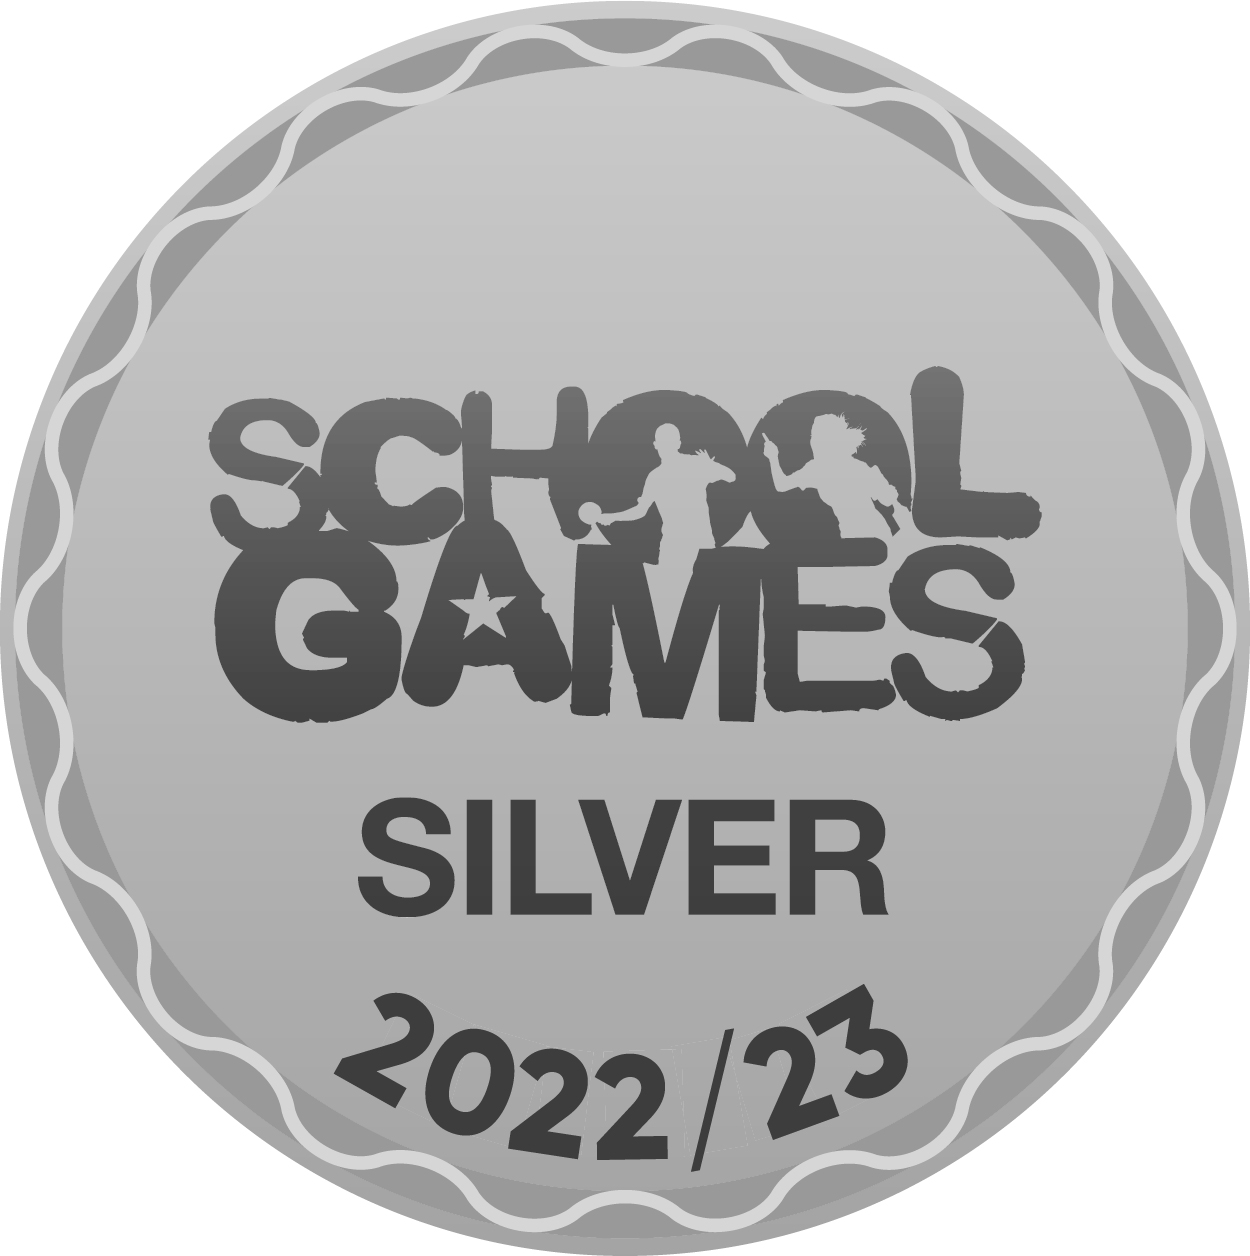 School Games Mark